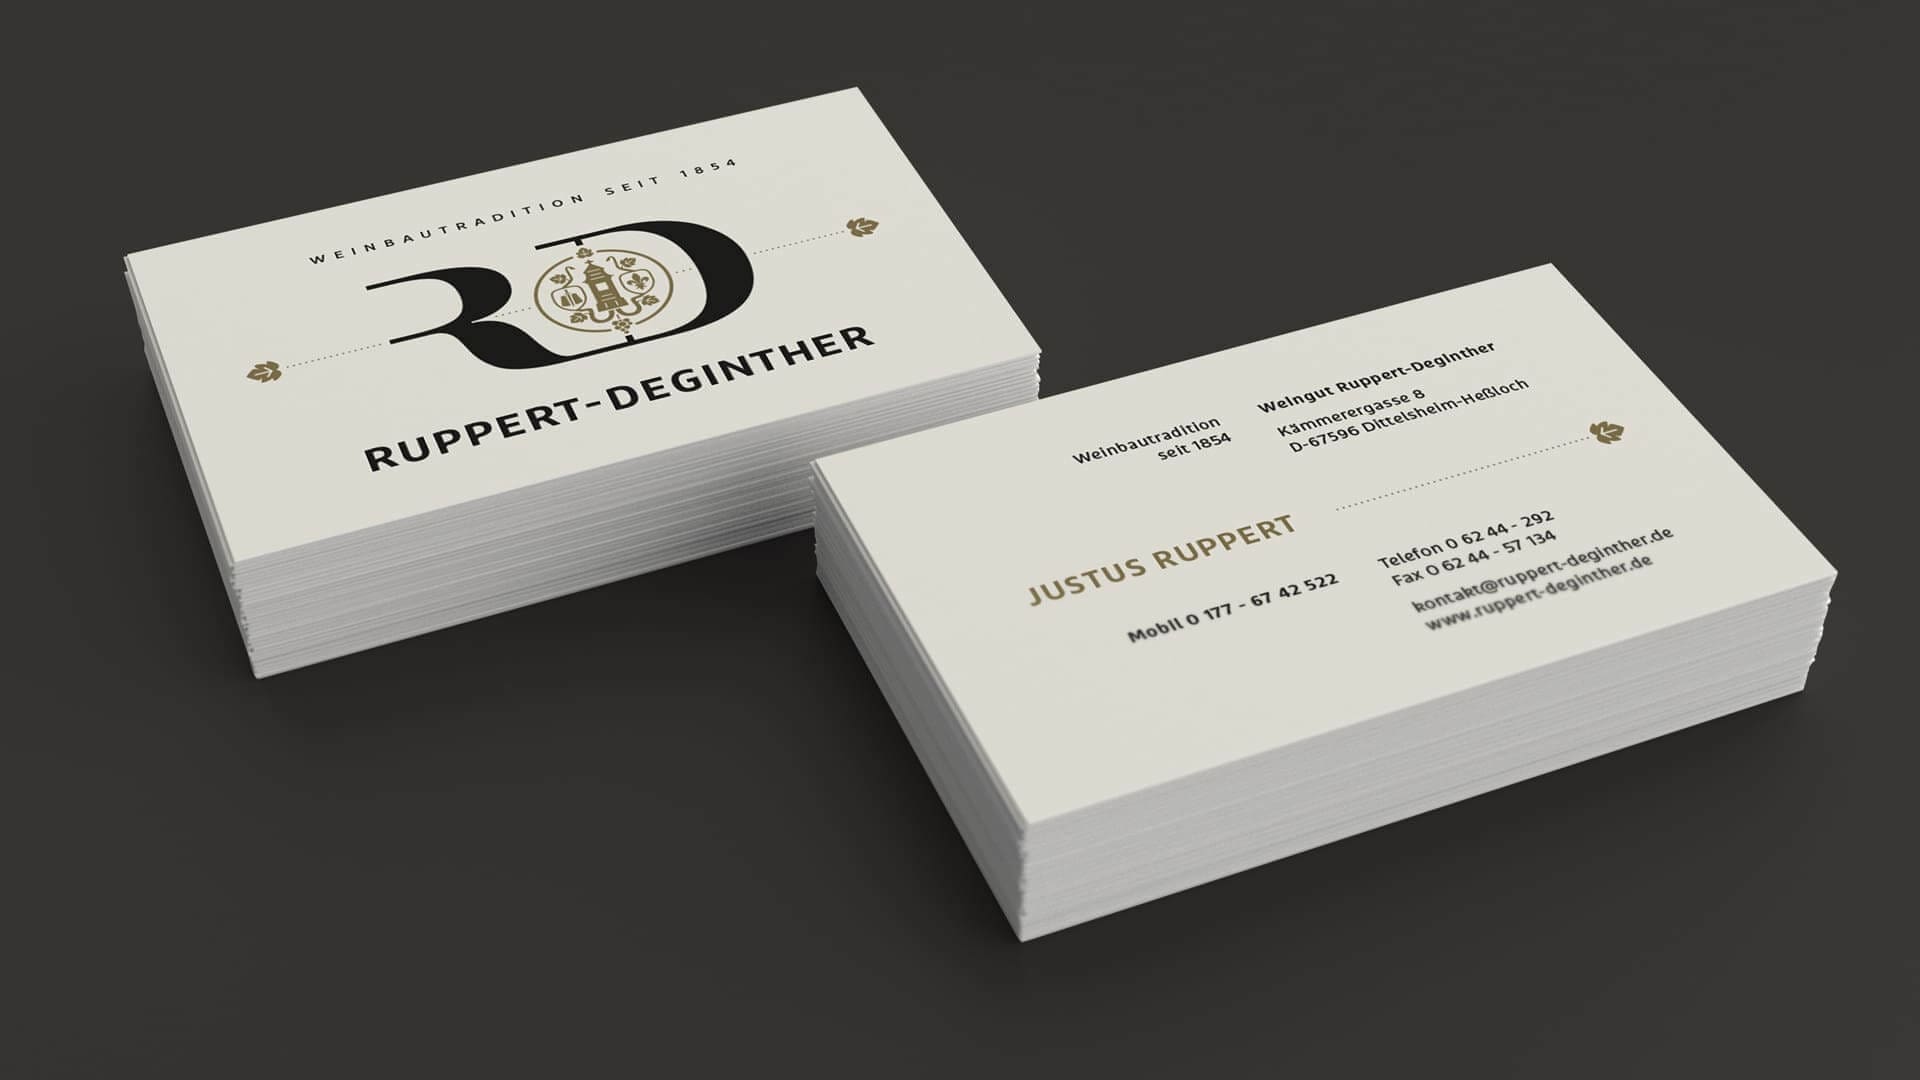 Corporate Identity Design für Ruppert-Deginther | Ein ausgezeichnetes Weingut in Rheinhessen | Darstellung der Visitenkarte (Vorder- und Rückseite)